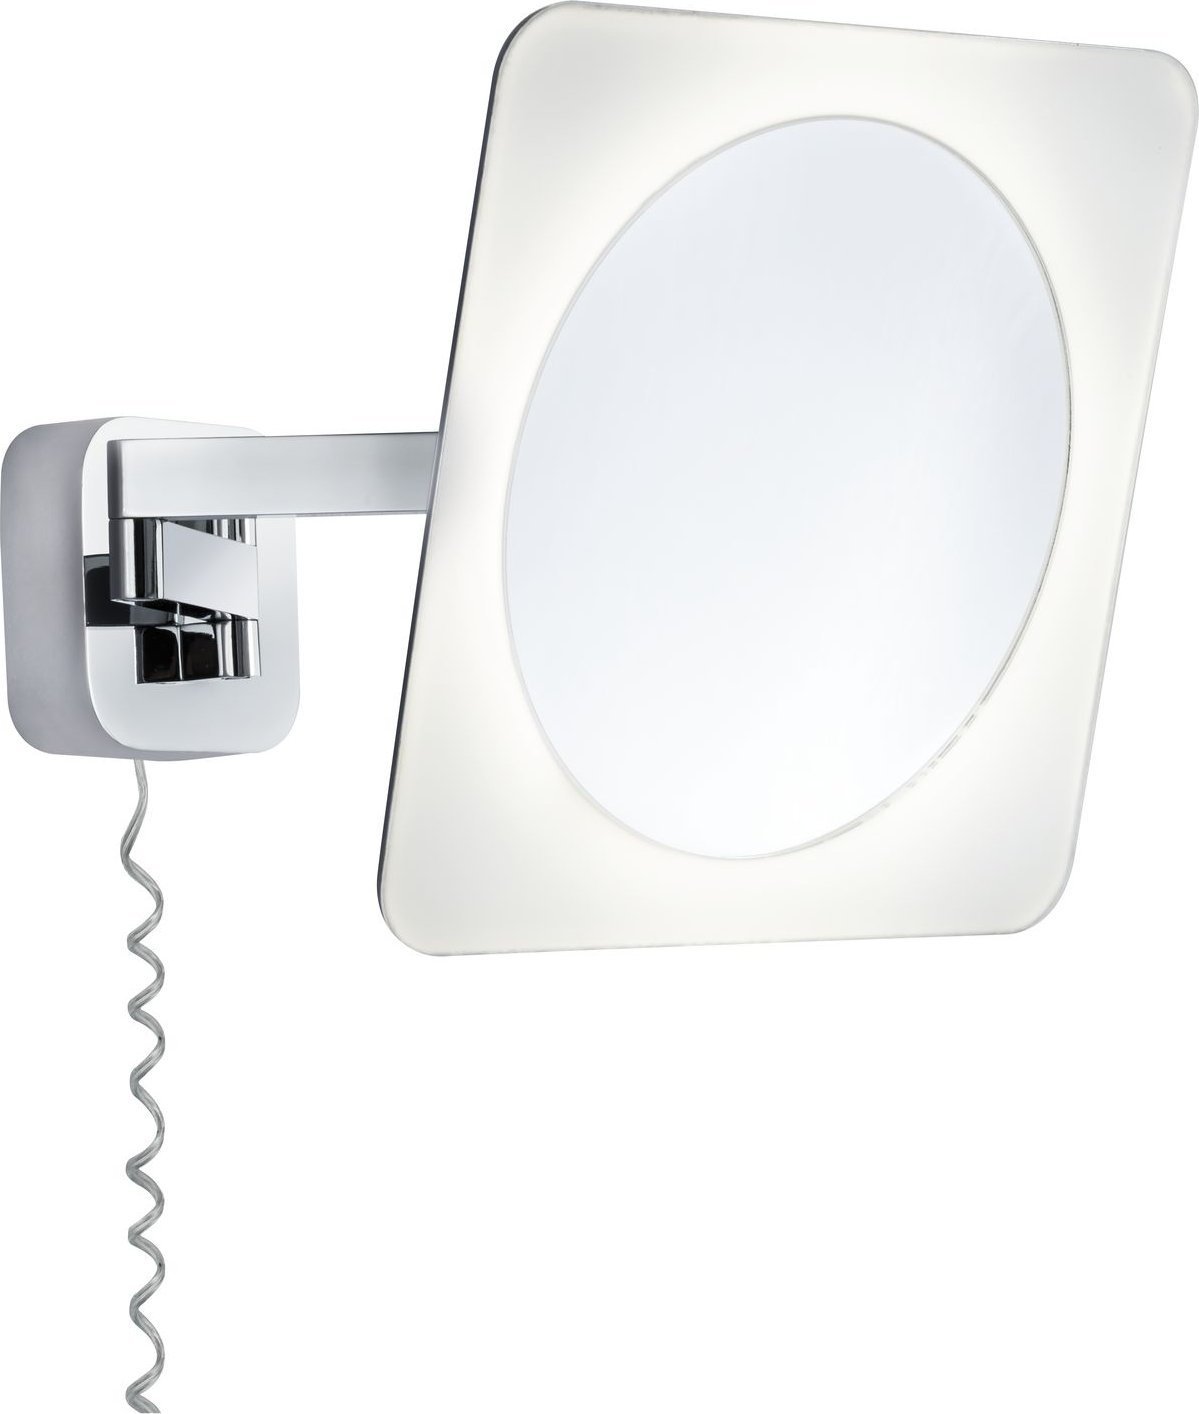 Aplica Bela LED cu oglinda cosmetica pentru baie, 5.7W